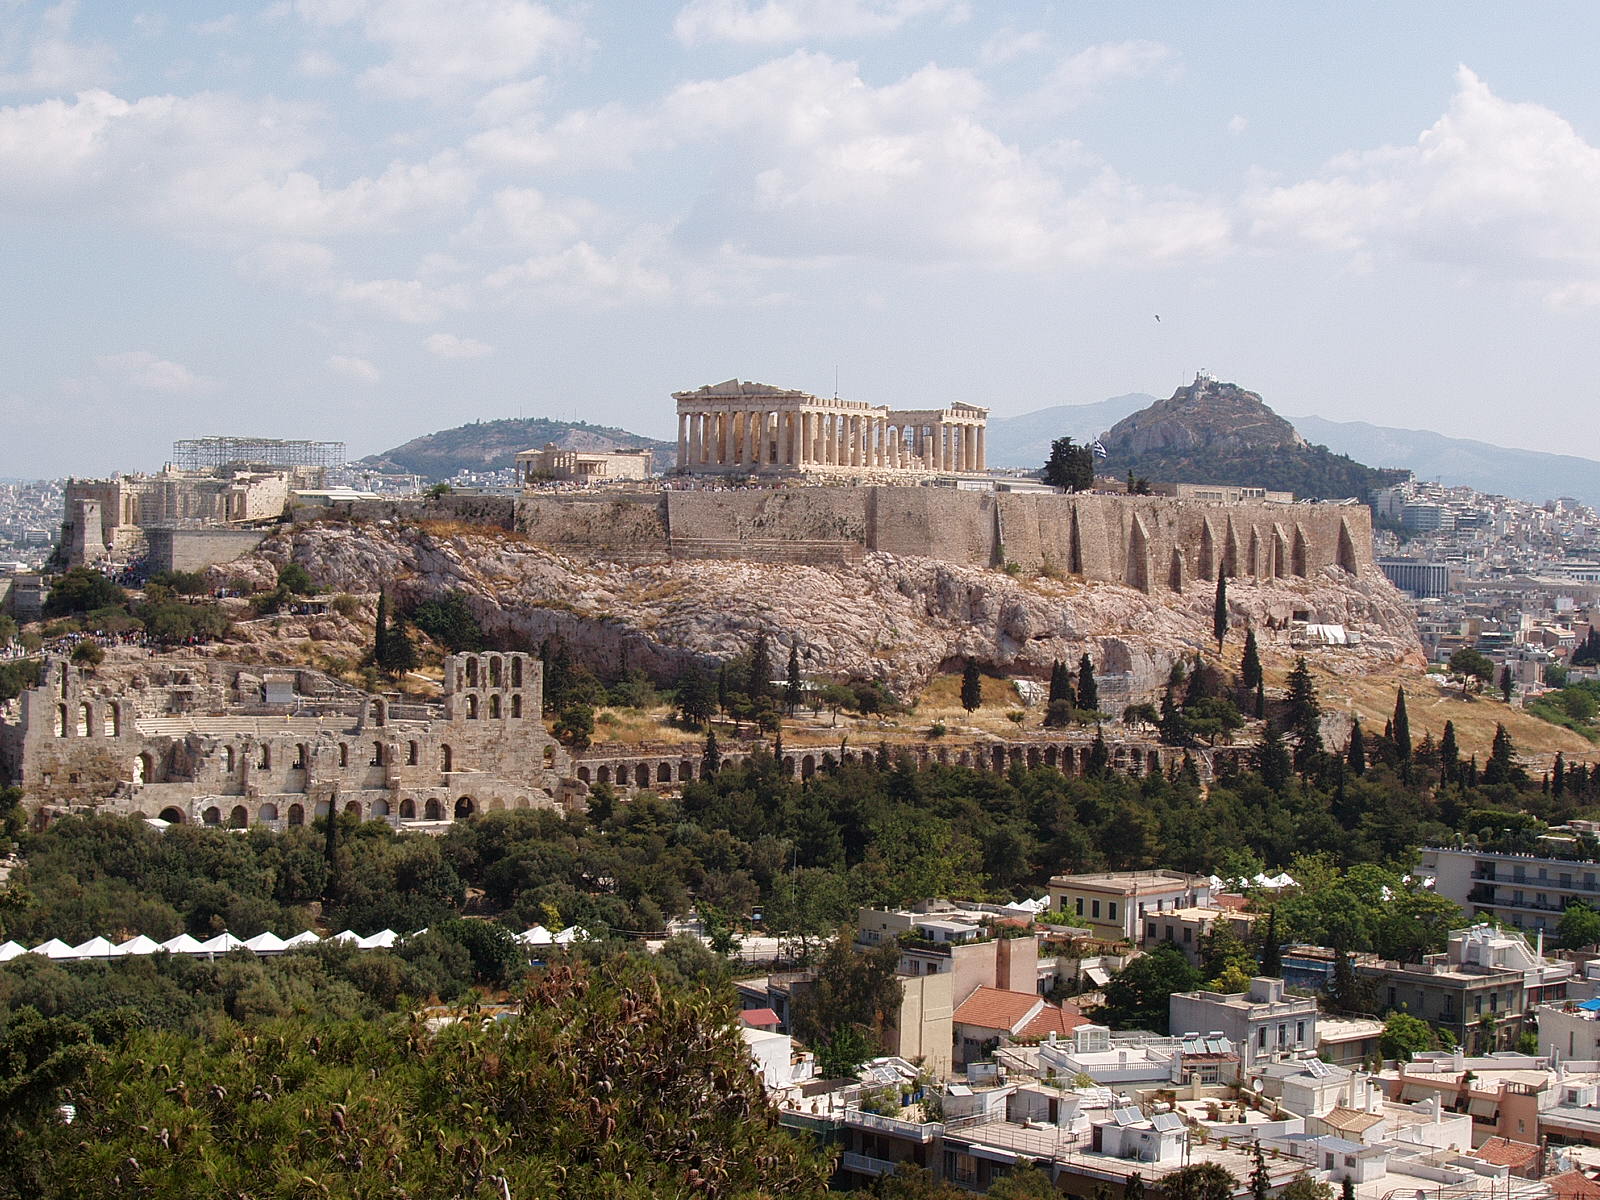 Acropolis - Ancient Greek Architecture